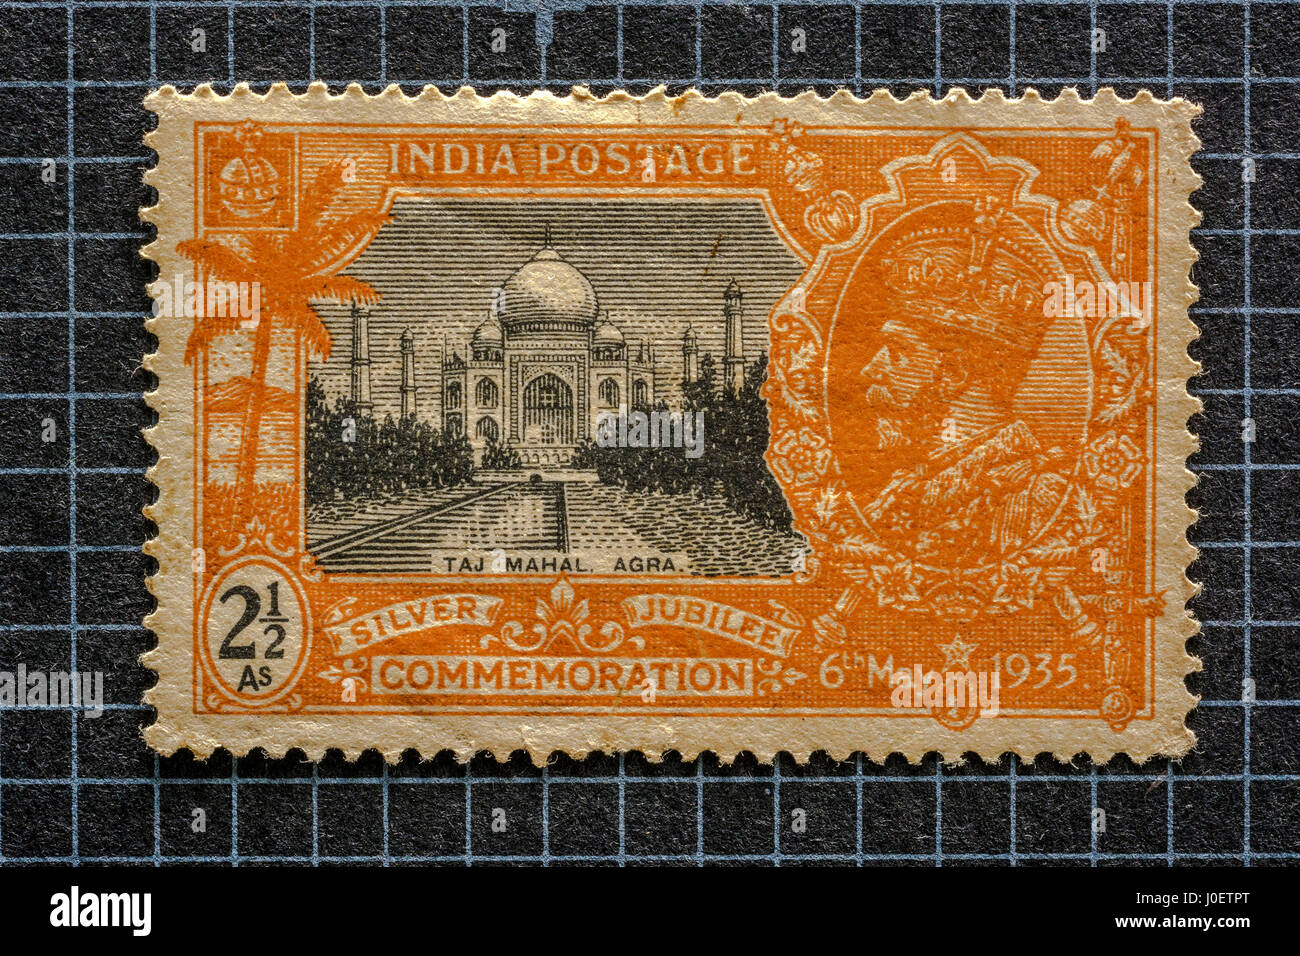 La commémoration du jubilé de 1935 Taj Mahal, Agra 2.5 anna timbres-poste, l'Inde, l'Asie Banque D'Images